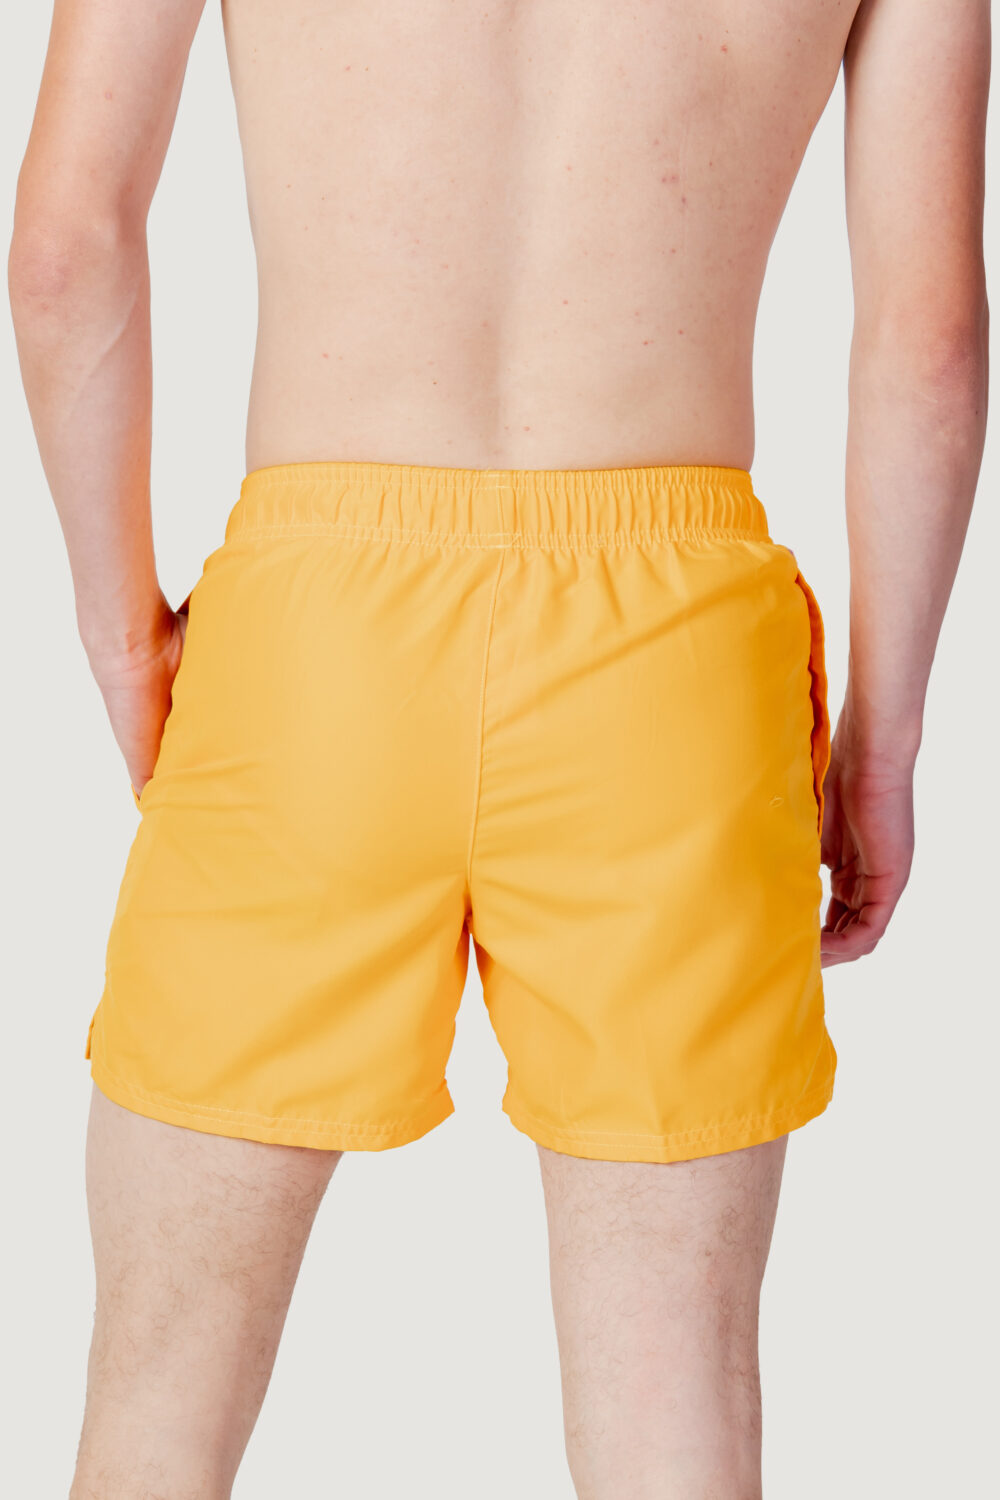 Costume da bagno Nike Swim volley short Arancione Fluo - Foto 4